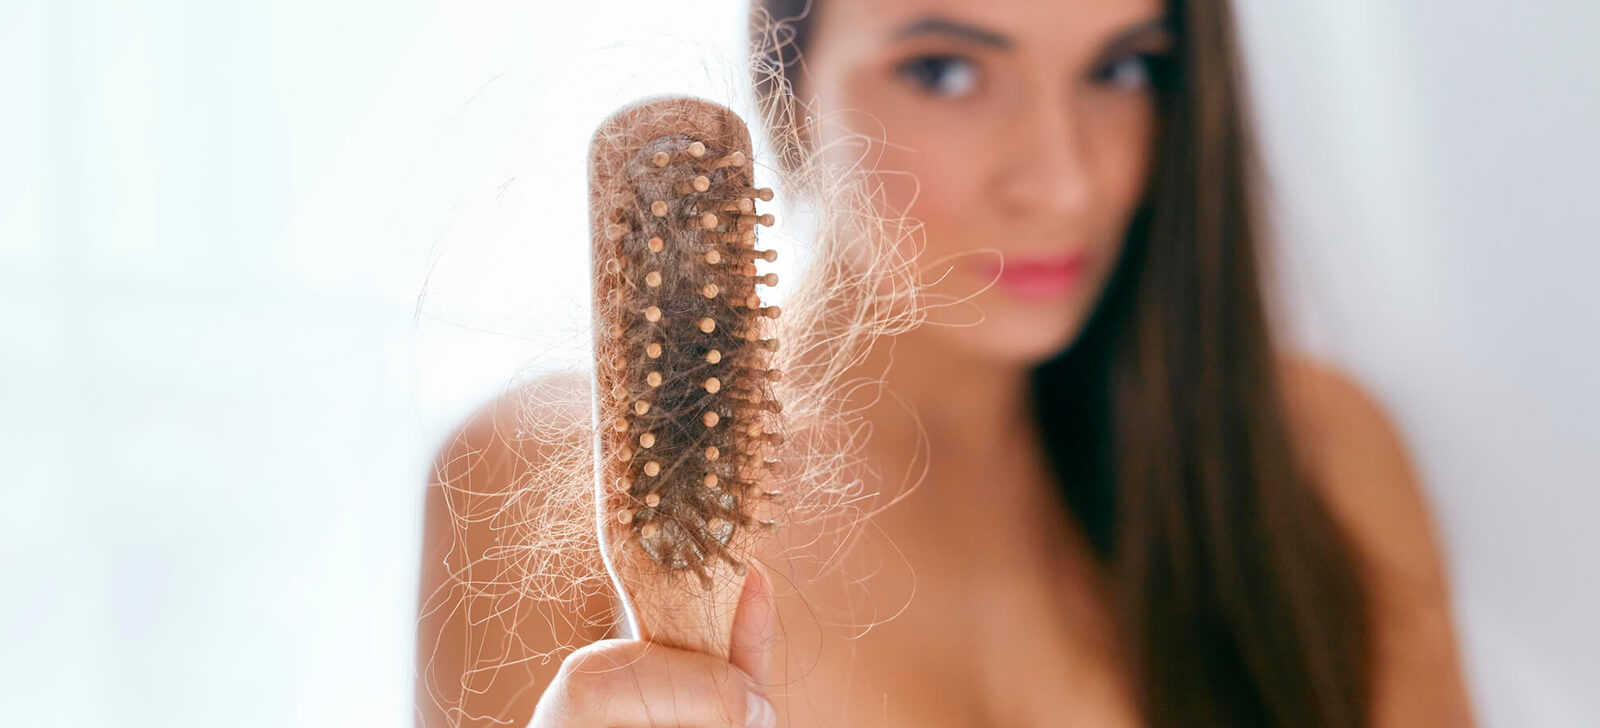 Causas e tratamentos naturais para a queda de cabelo